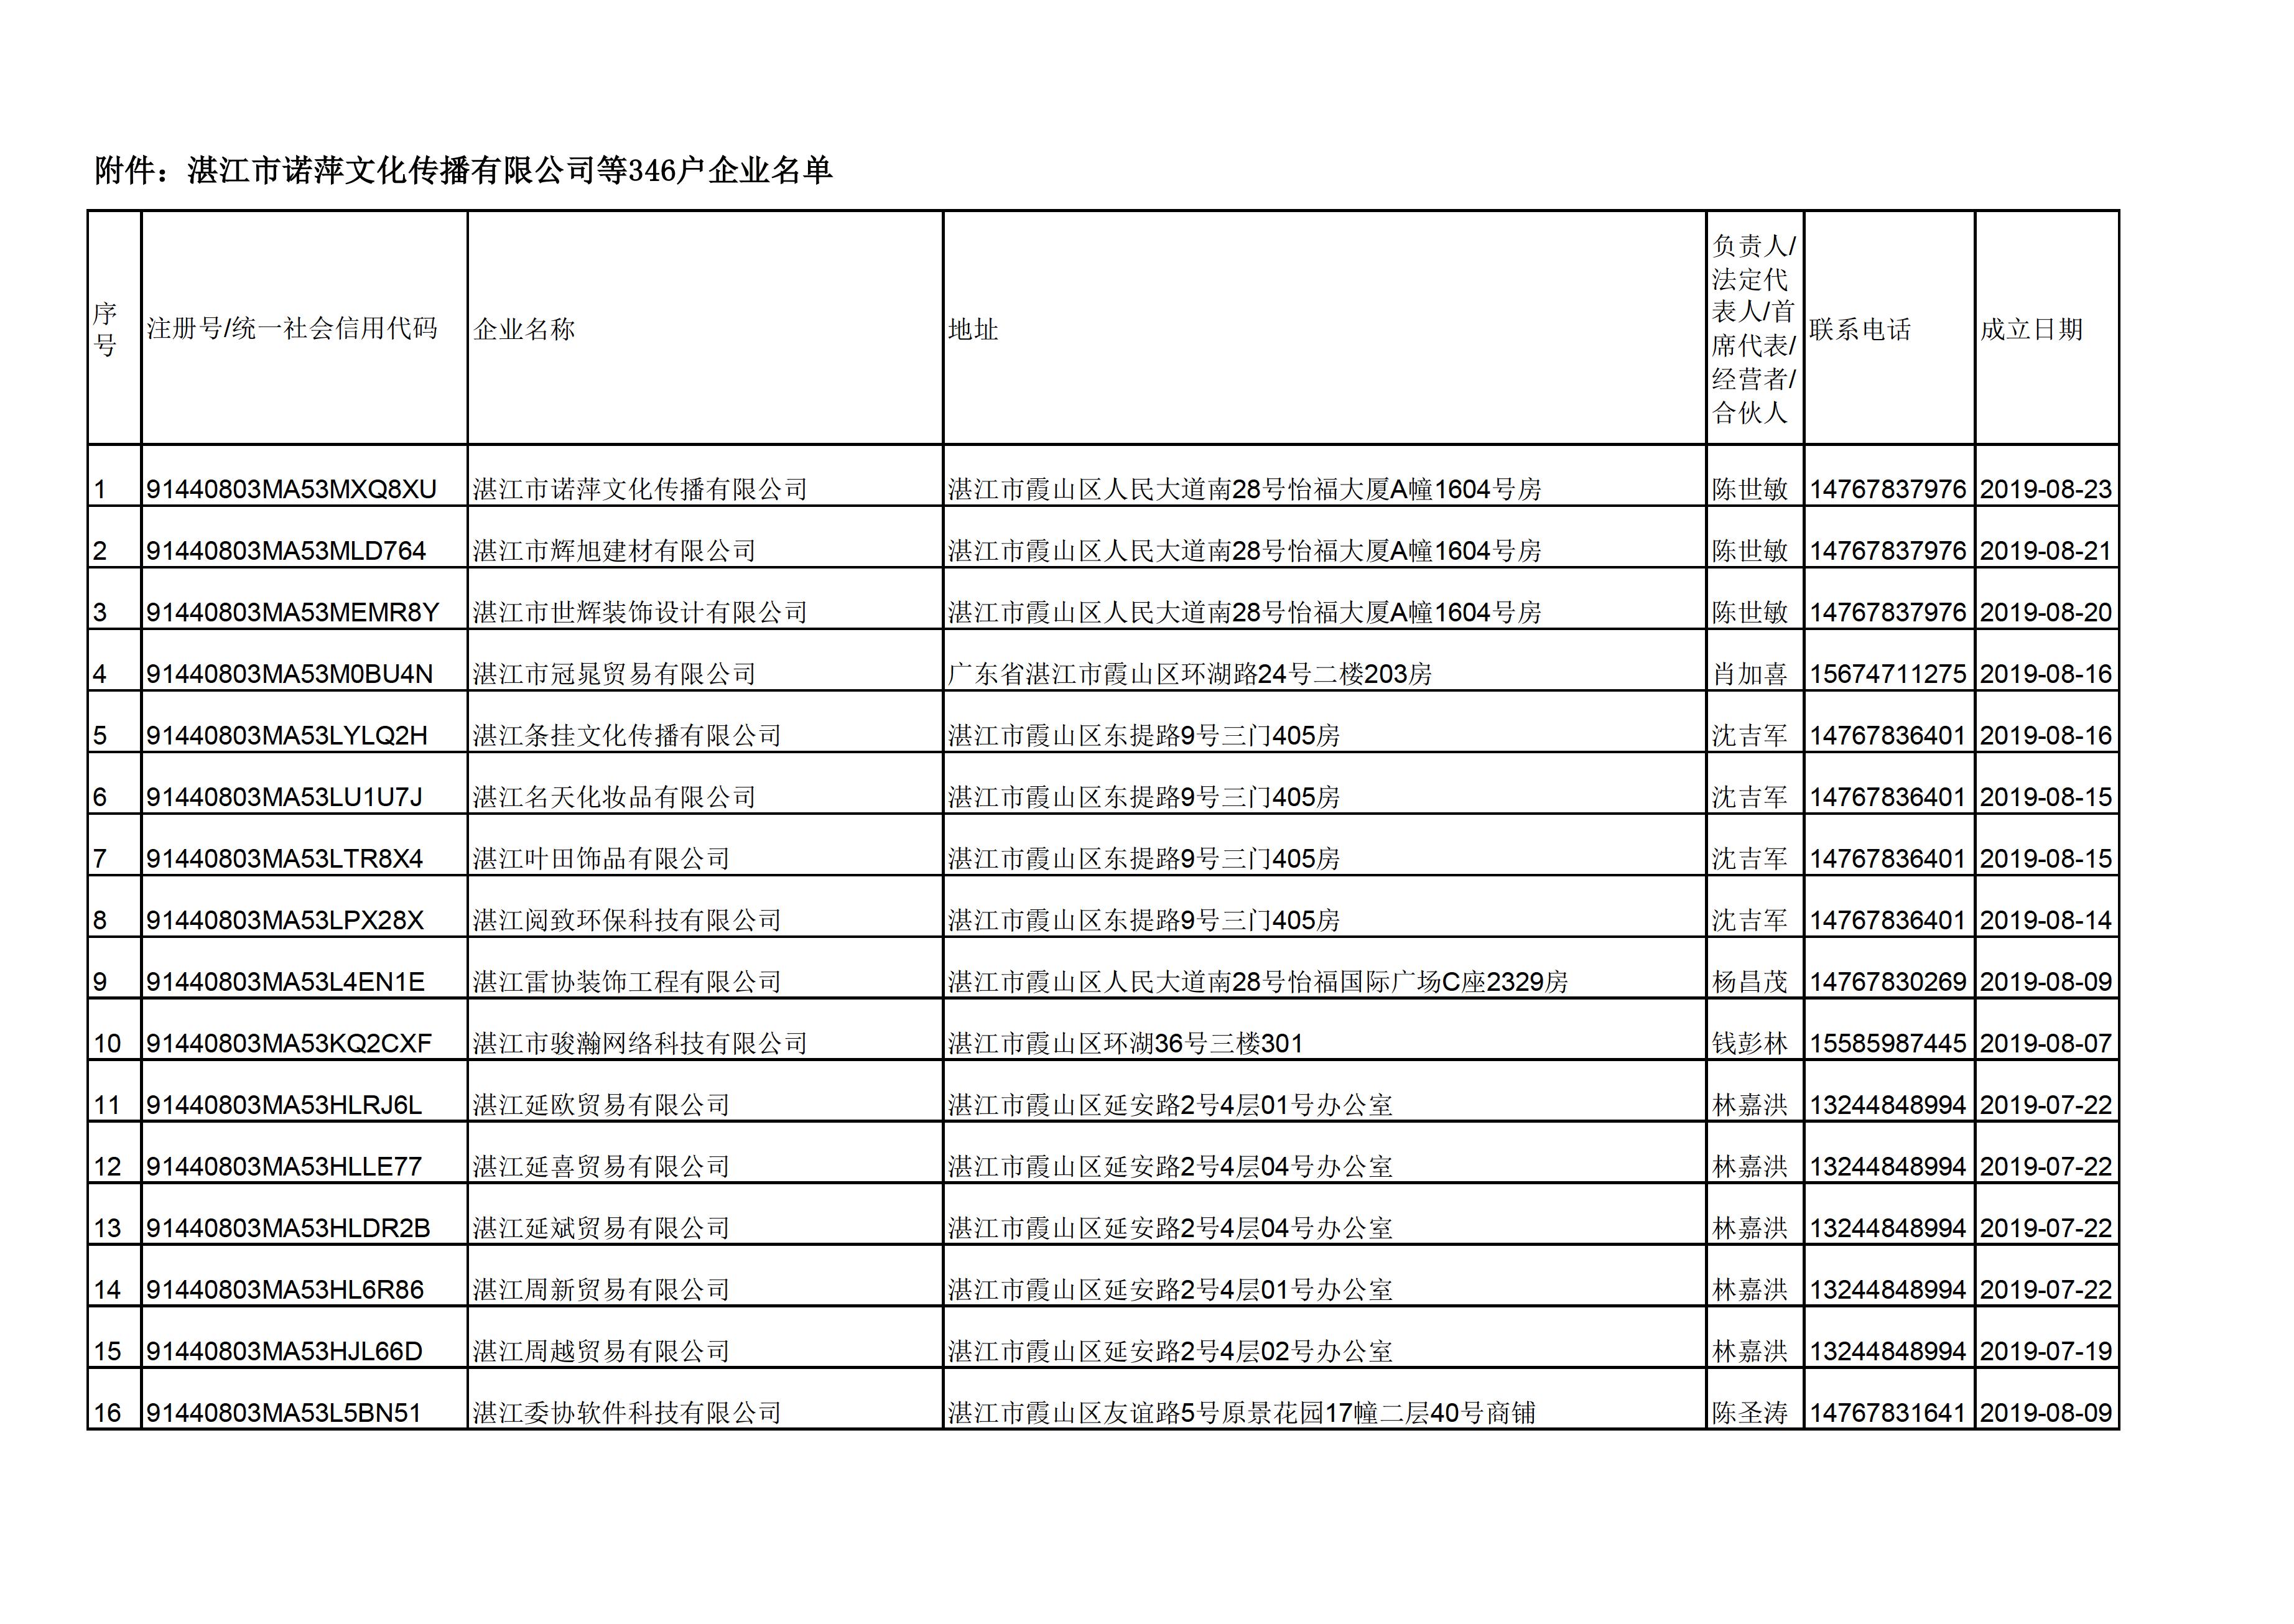 附件：湛江市诺萍文化传播有限公司等346户企业名单 - 0001.jpg